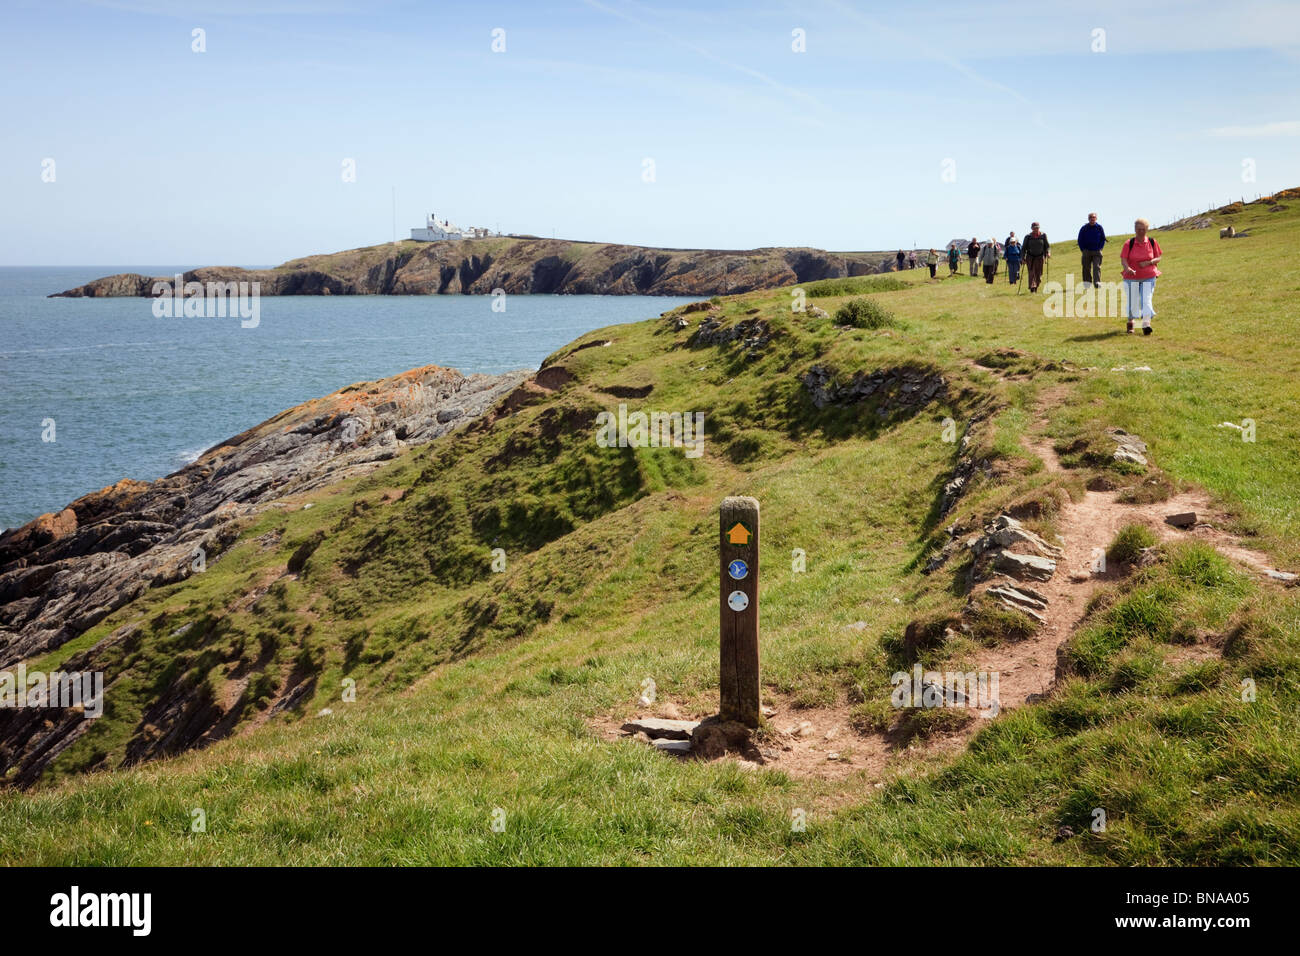 Isle of Anglesey Sentier du littoral et le Pays de Galles côte waymarker avec les gens à pied de Lynas Point. Llaneilian Isle of Anglesey au nord du Pays de Galles UK Banque D'Images